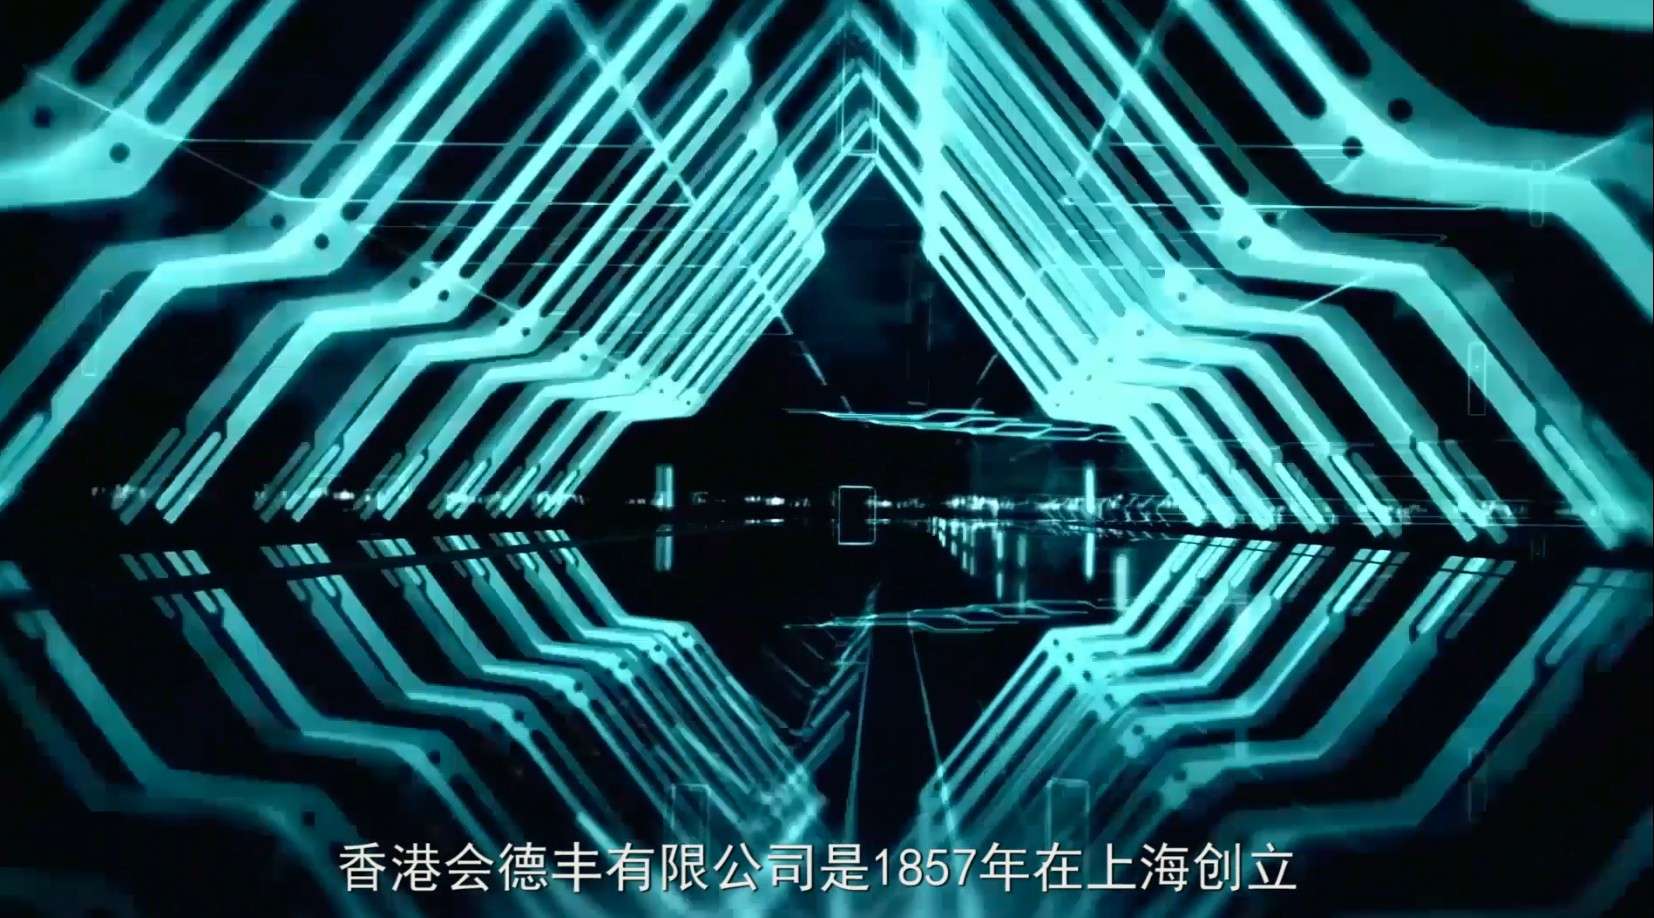 會德豐企業宣傳片(港交所：0020)在香港交易所上市的综合企业公司